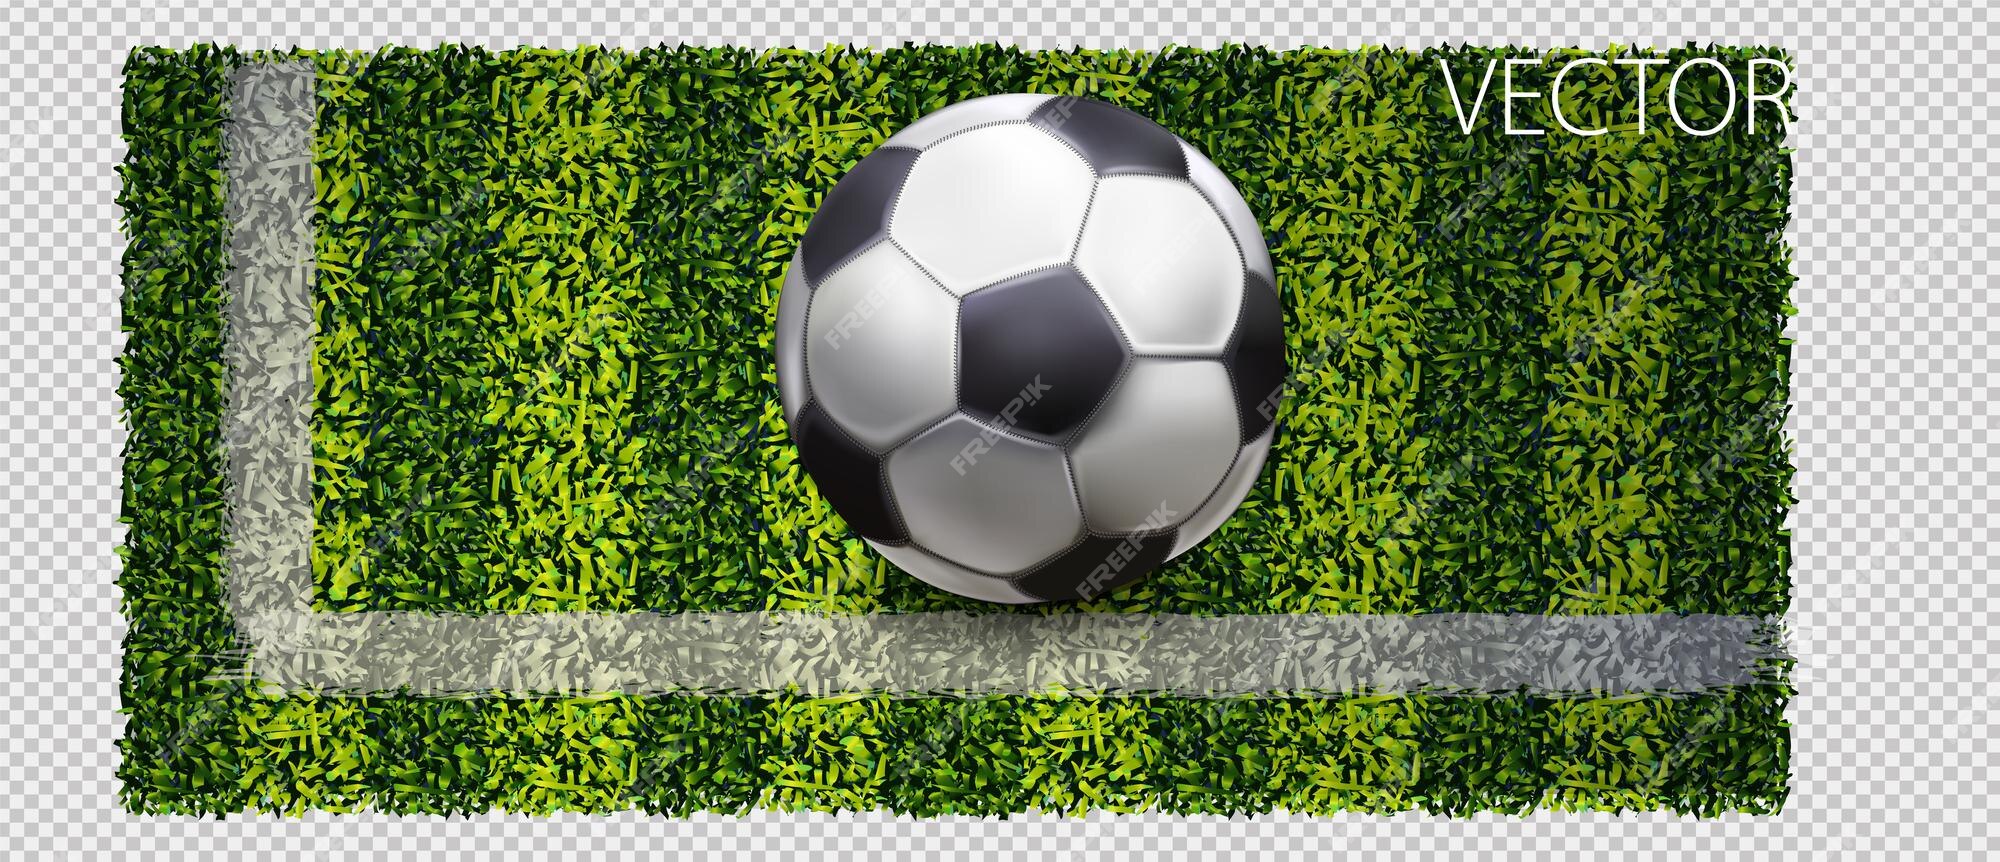 Bola de futebol ou futebol na net em fundo verde grama 684353 Vetor no  Vecteezy